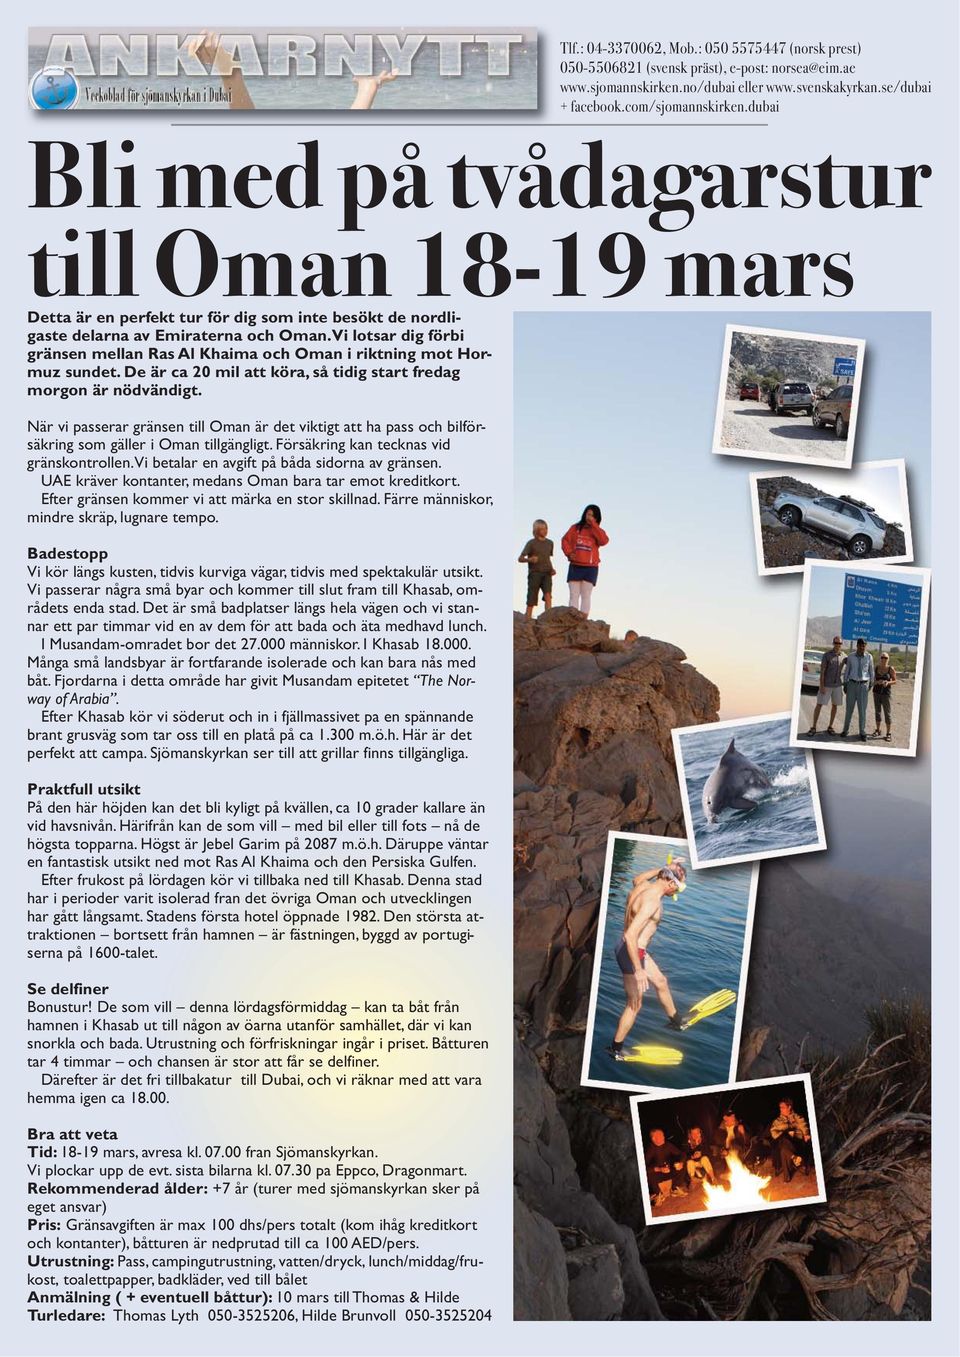 När vi passerar gränsen till Oman är det viktigt att ha pass och bilförsäkring som gäller i Oman tillgängligt. Försäkring kan tecknas vid gränskontrollen.